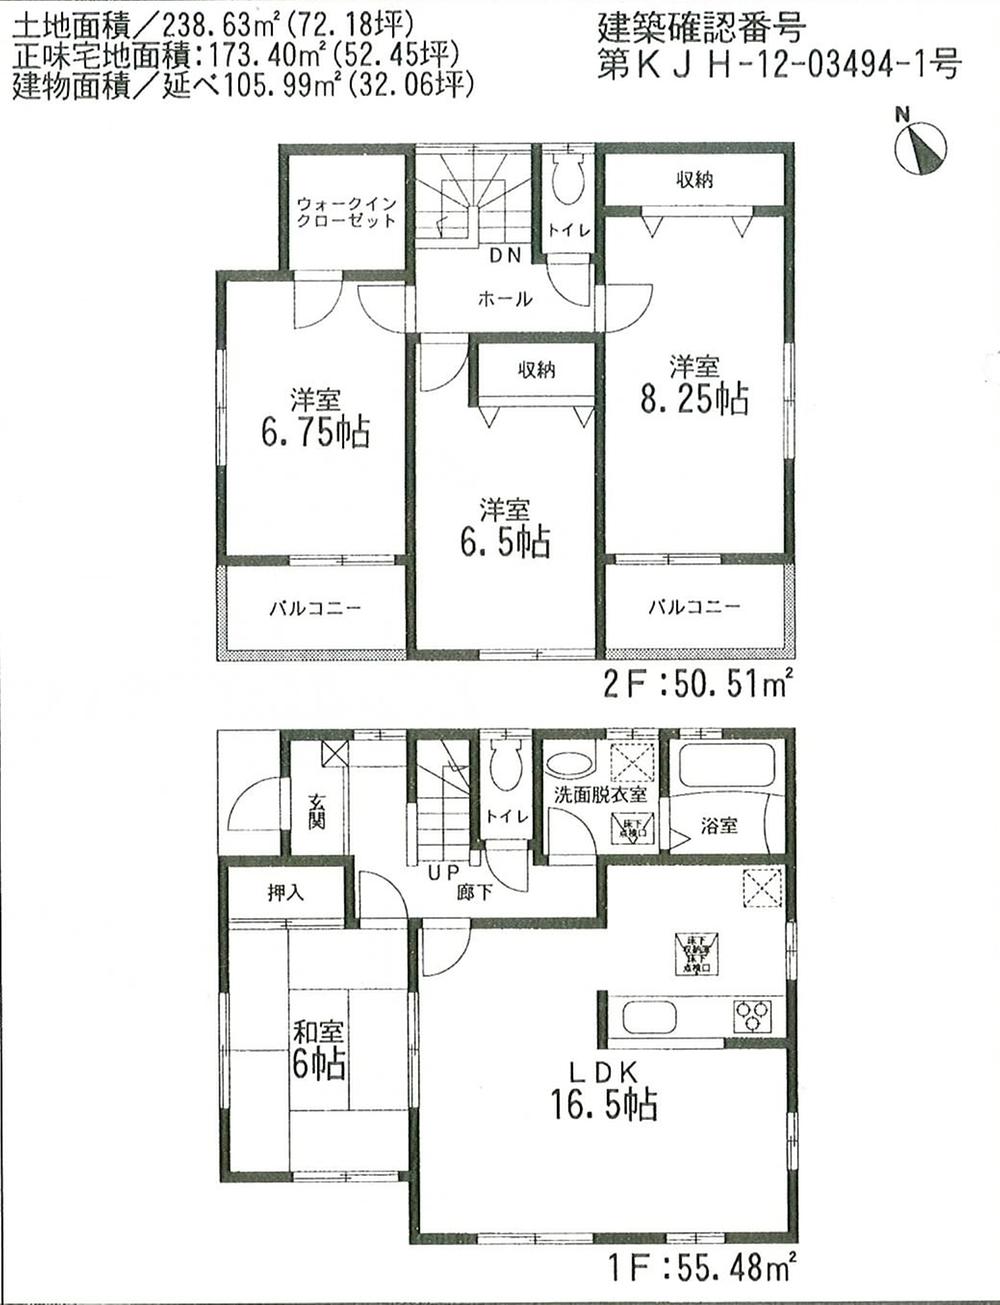 Floor plan. 23,480,000 yen, 4LDK + S (storeroom), Land area 200.11 sq m , Building area 105.99 sq m